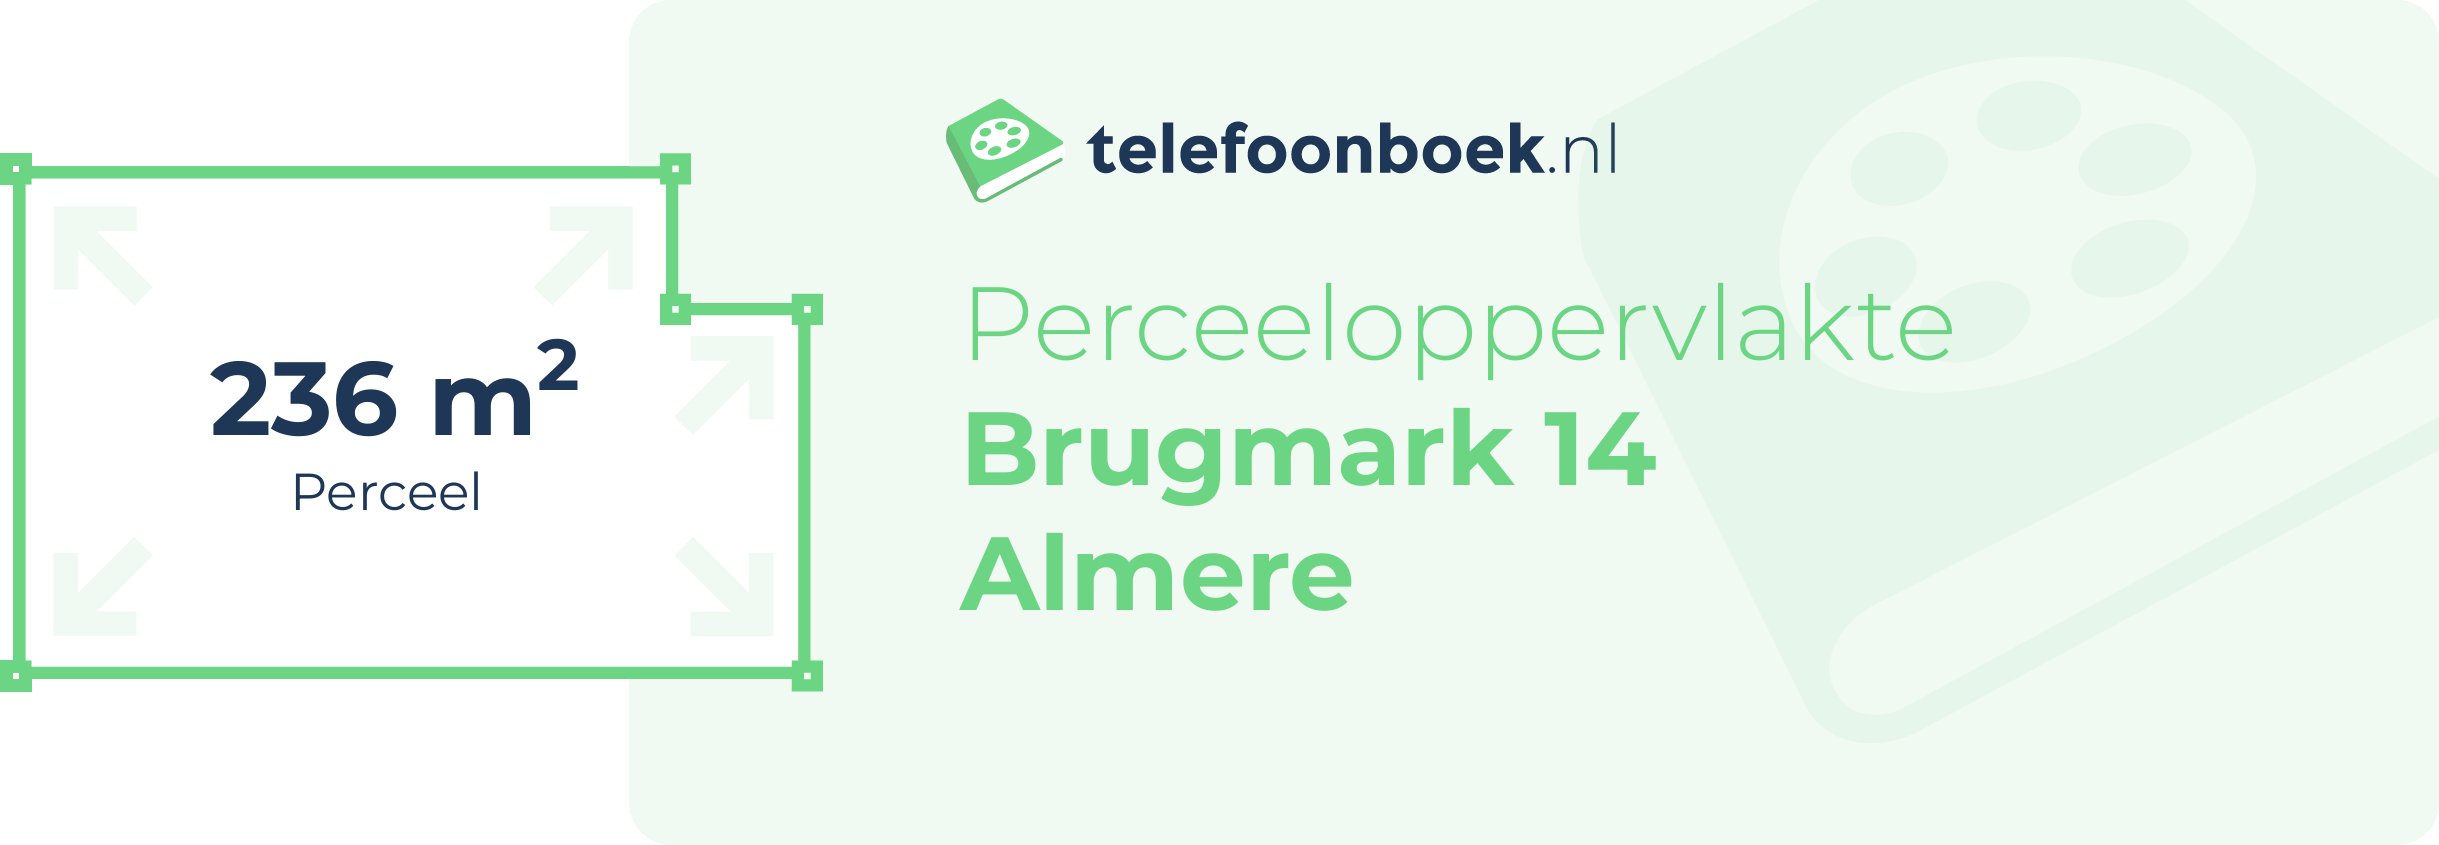 Perceeloppervlakte Brugmark 14 Almere